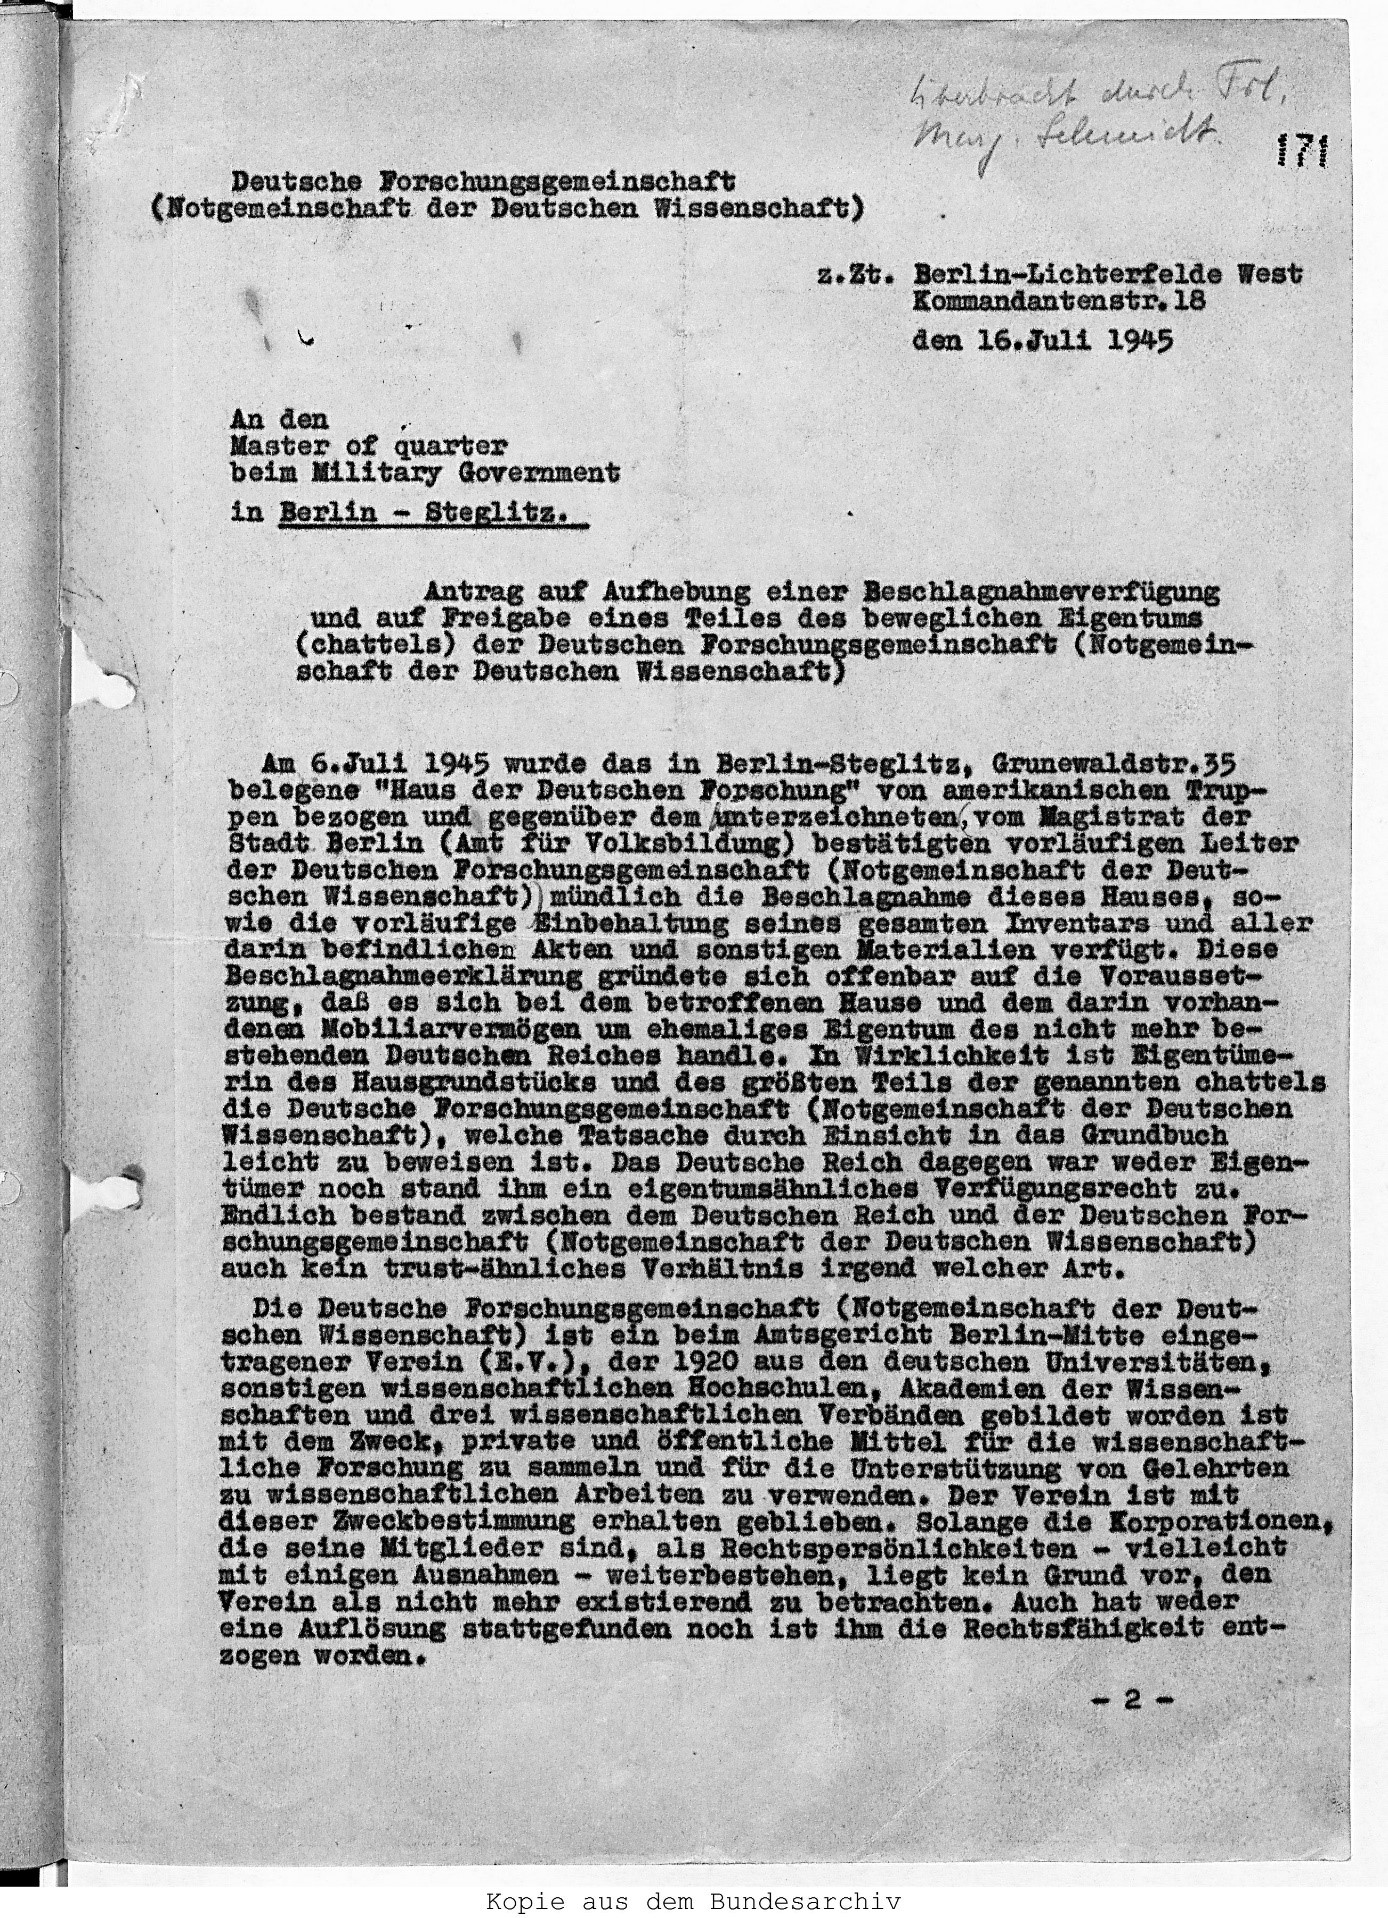 Auszug aus dem Schreiben Dr. Griewanks an den Master of quarter beim Military Government 16.7.1945